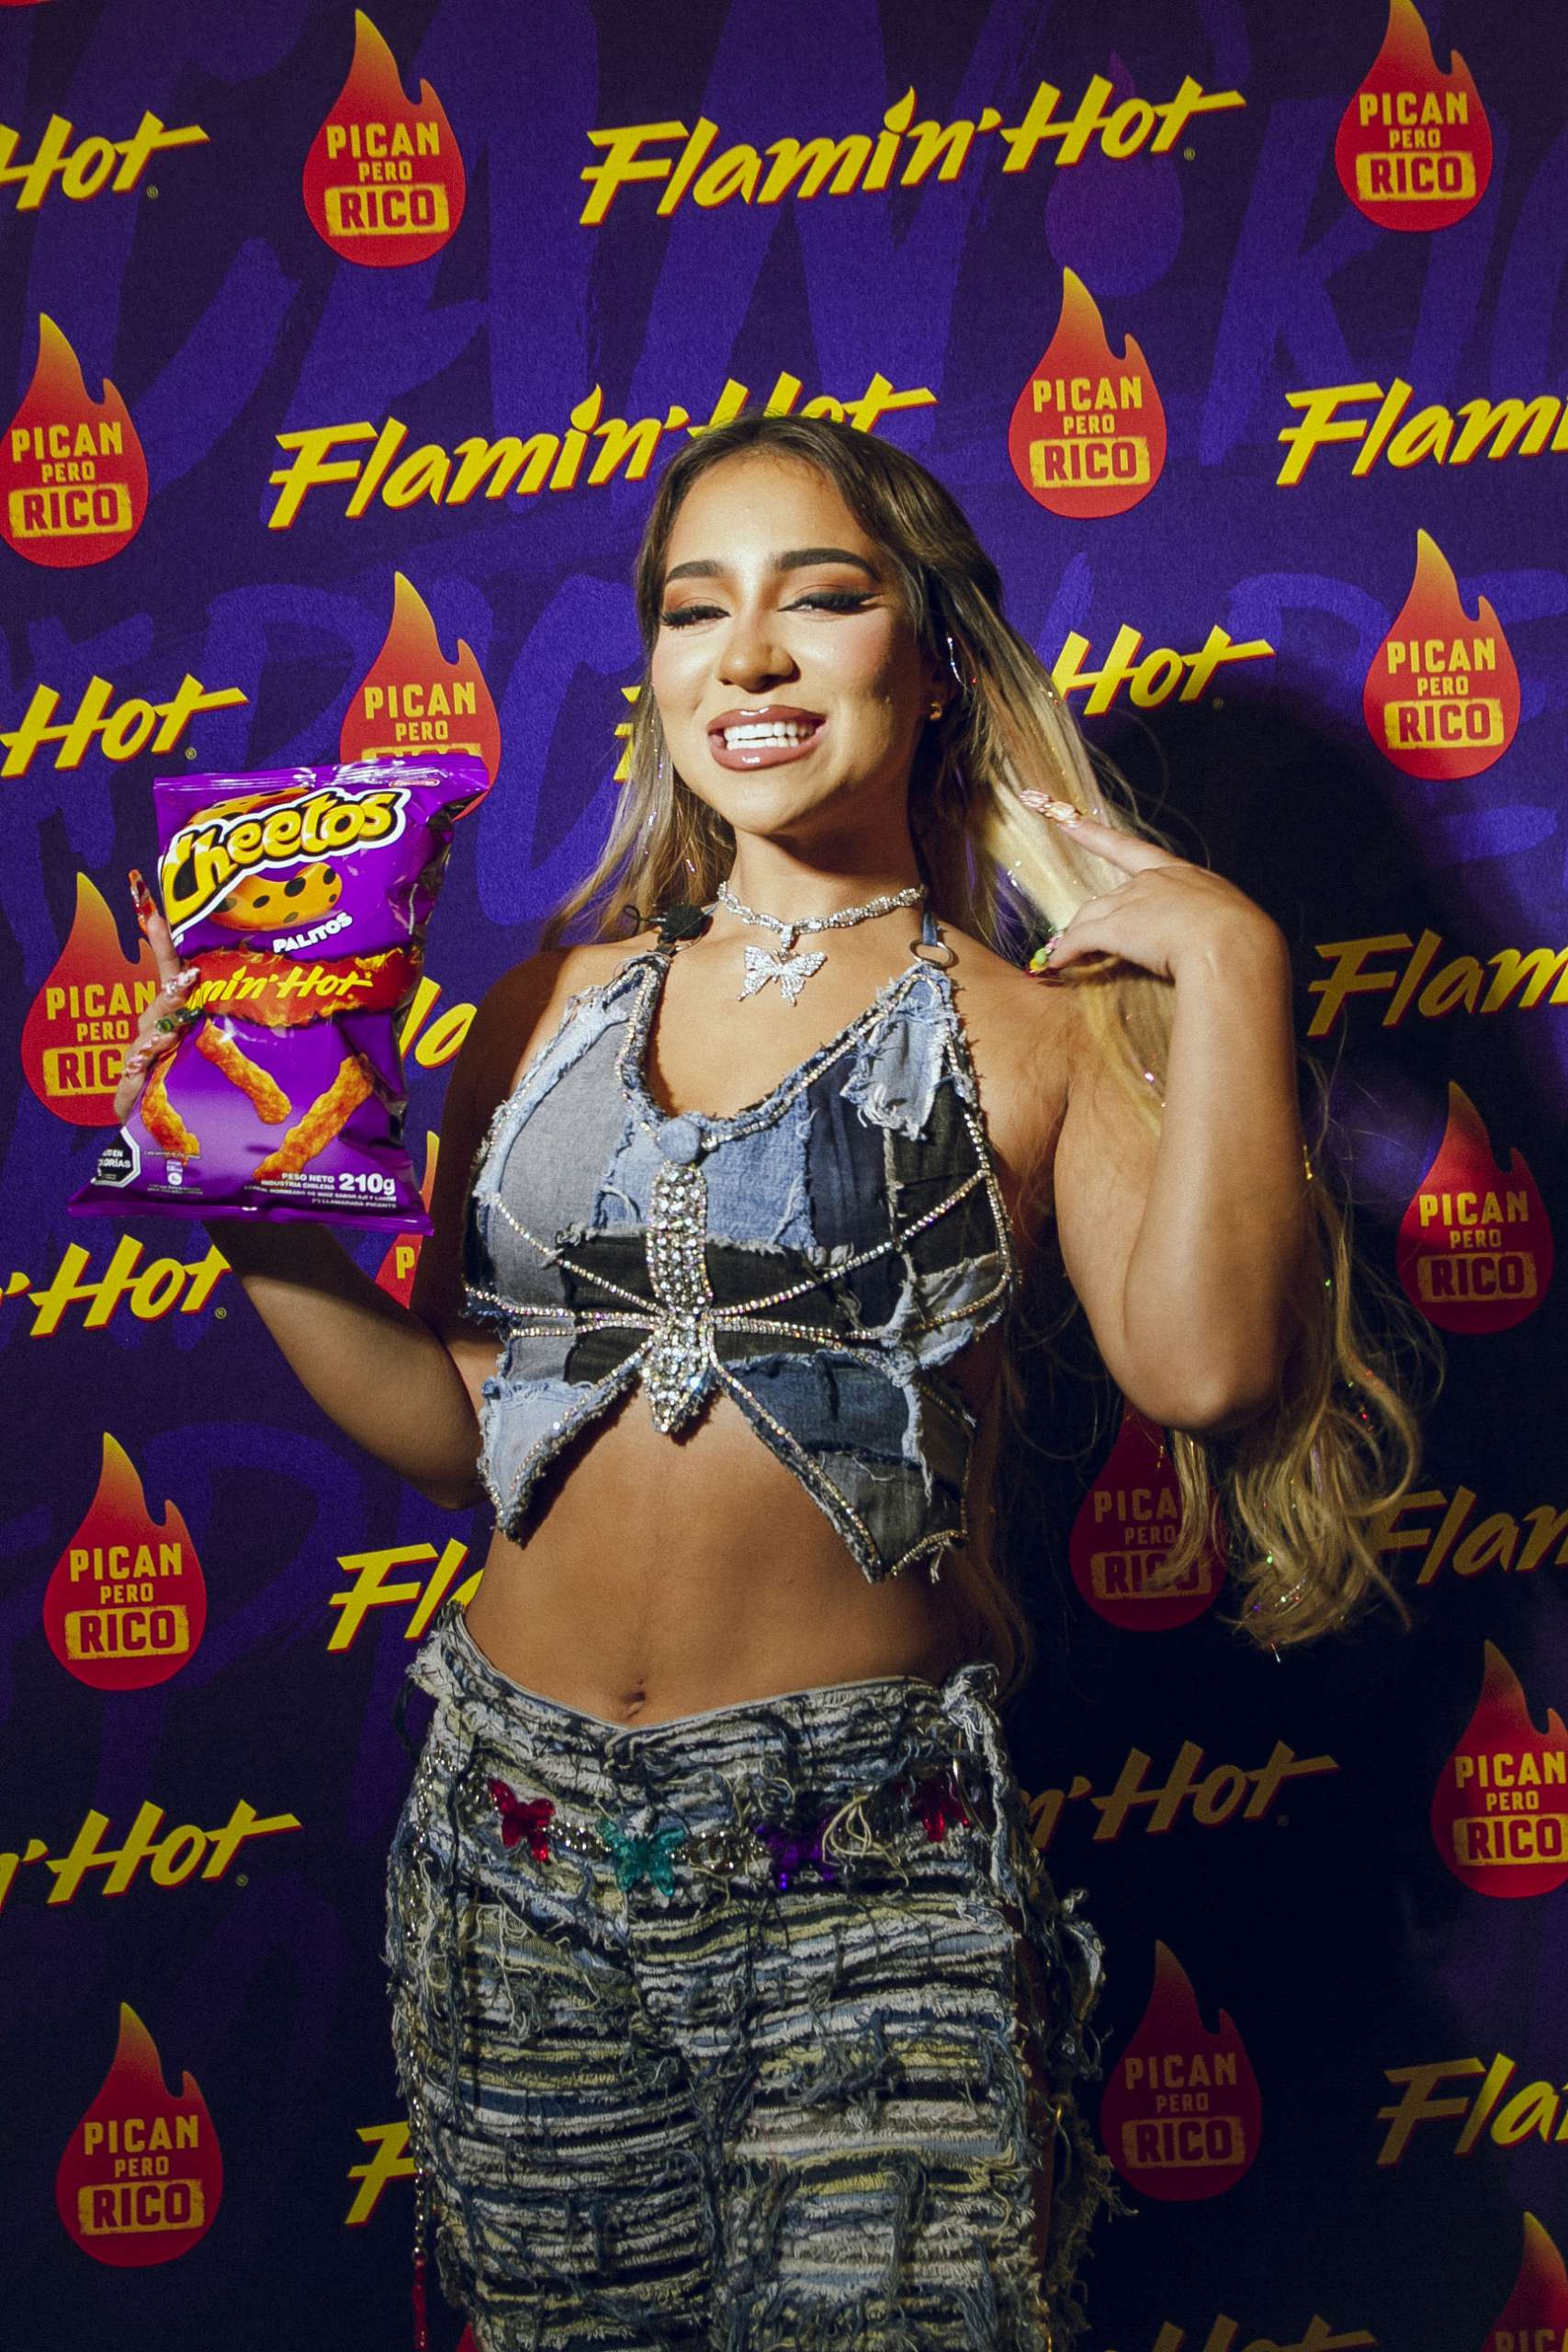 Descubre cómo fue el lanzamiento de Flamin’ Hot, la línea picante de productos PepsiCo que dejó en llamas a Princesa Alba